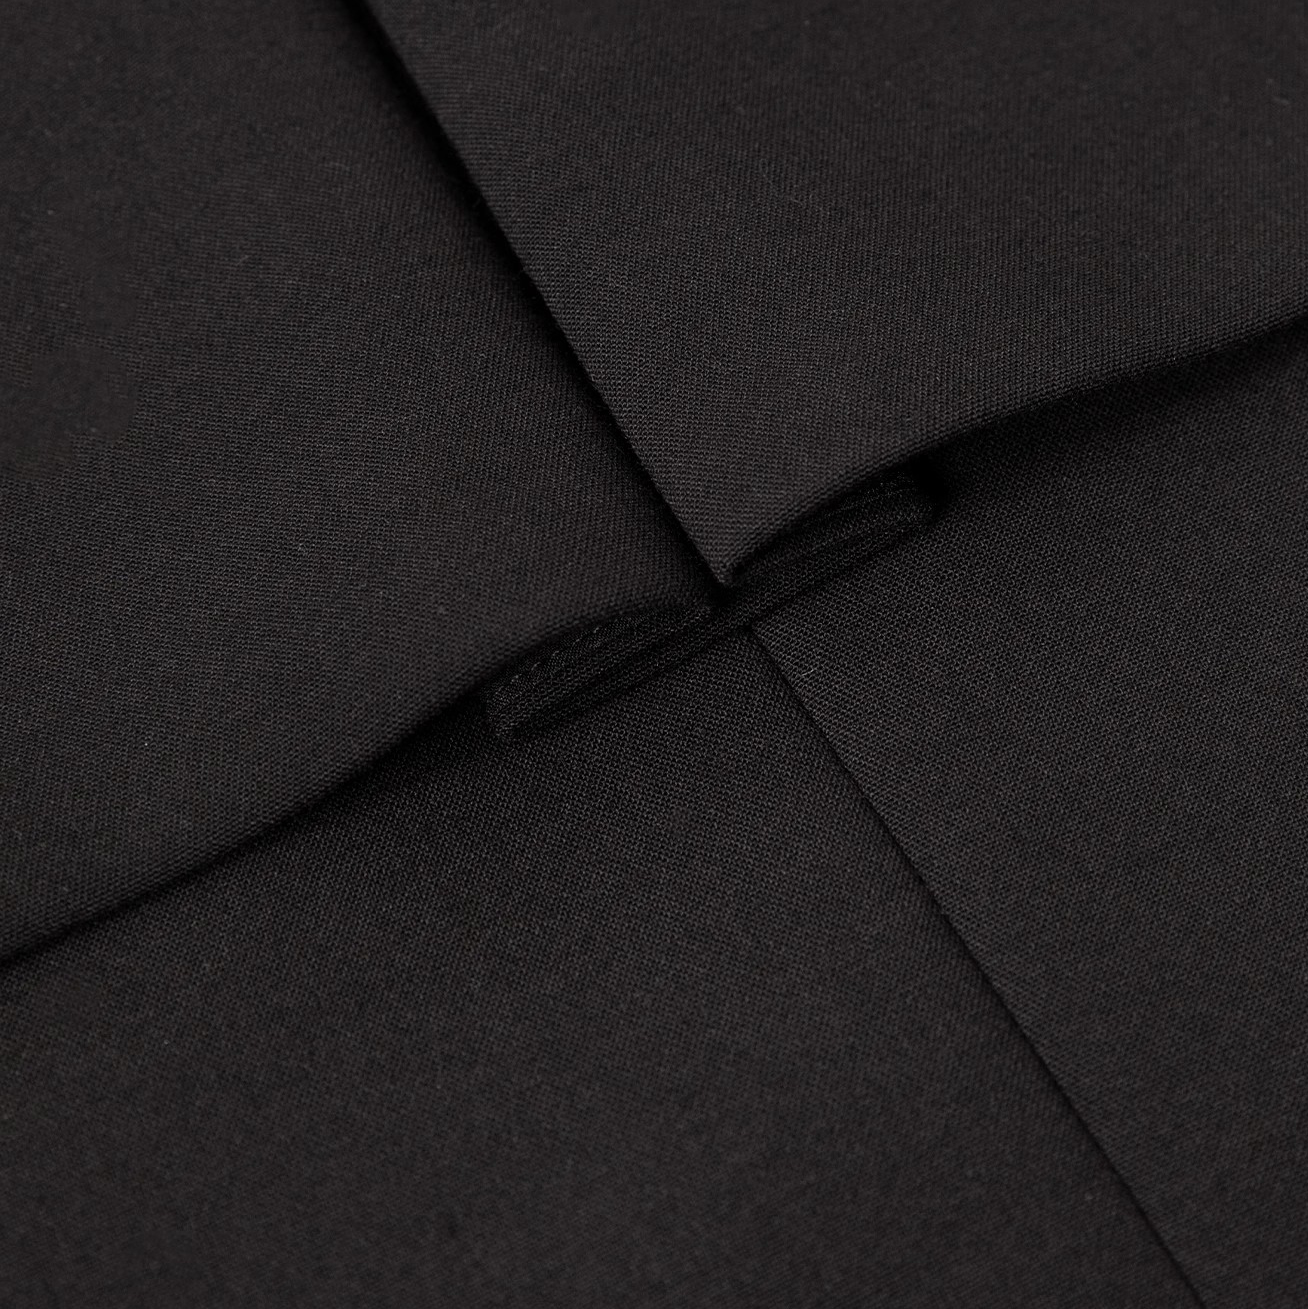 Custom Black Suit Jacket Dresses For Women Manufacturer (5)